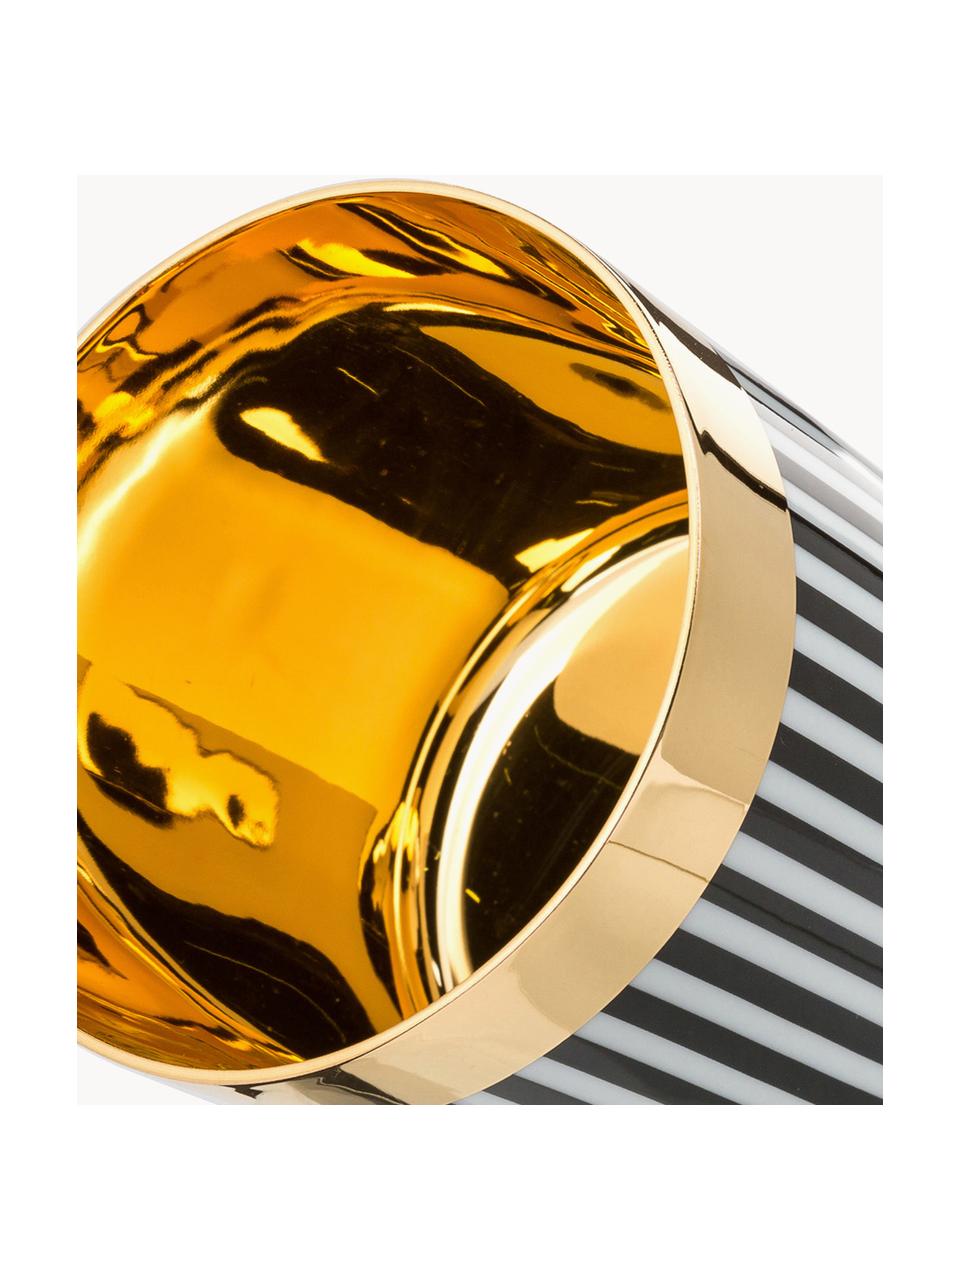 Vaso de champán de porcelana Sip of Gold, Borde: dorado, Multicolor, Ø 9 x Al 7 cm, 300 ml